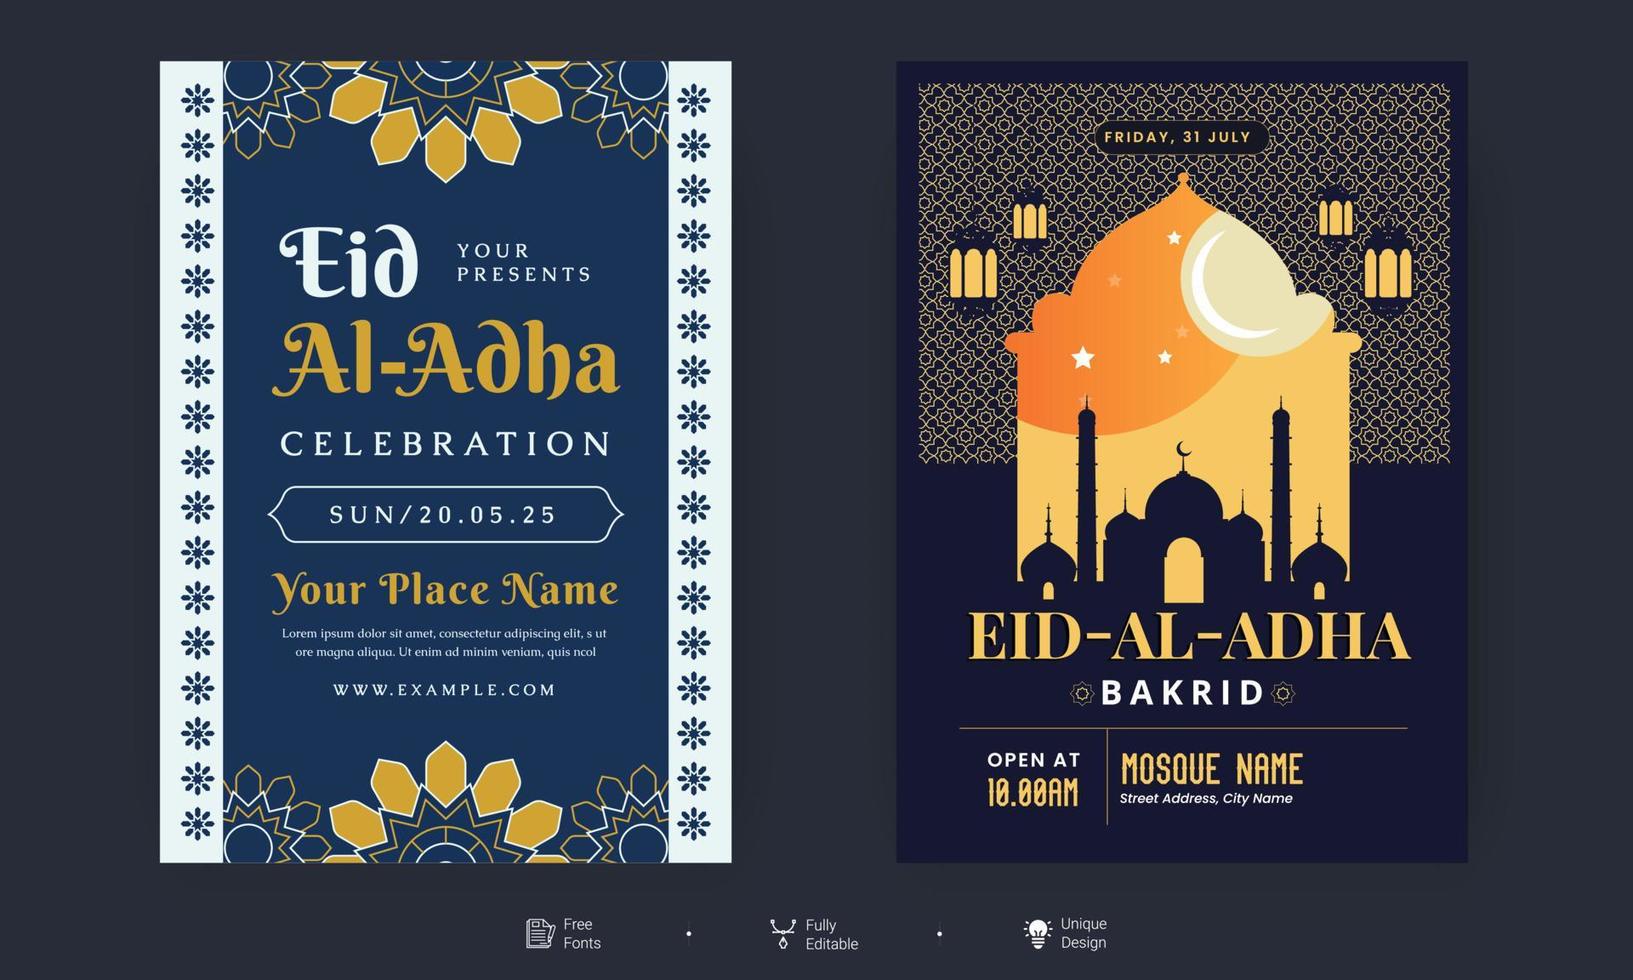 folleto de eid al adha. eid, ramadan kareem conjunto de carteles o diseño de invitaciones. tarjeta de felicitación retro decorativa o diseño de diseño de invitación vector